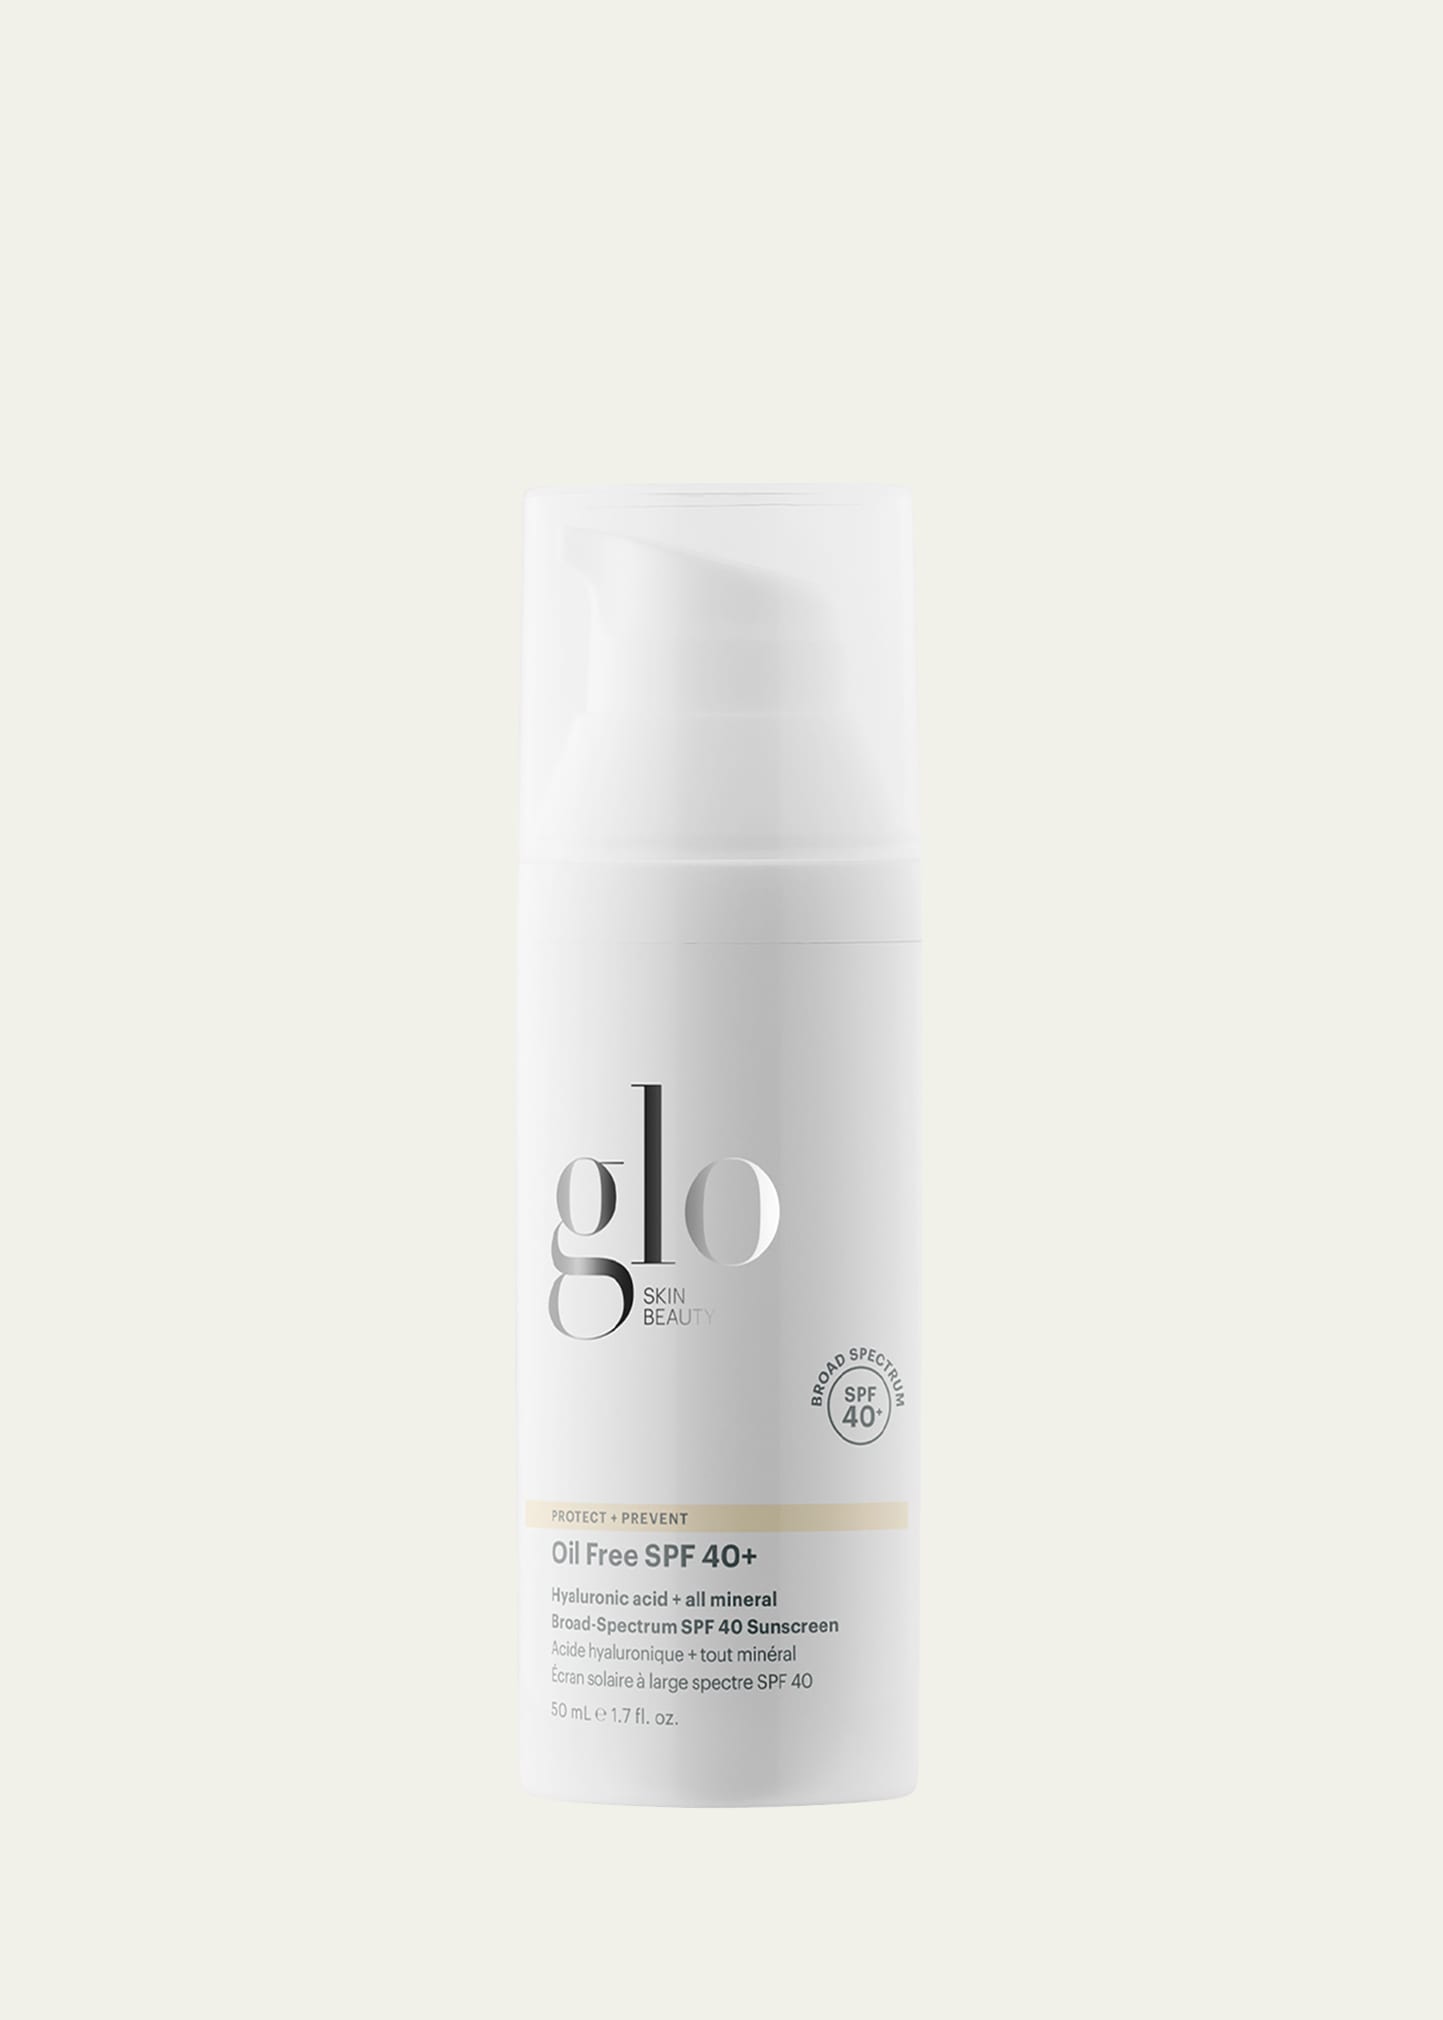 Glo Skin Beauty 1.7 oz. Oil-Free SPF 40+ Broad Spectrum Sunscreen